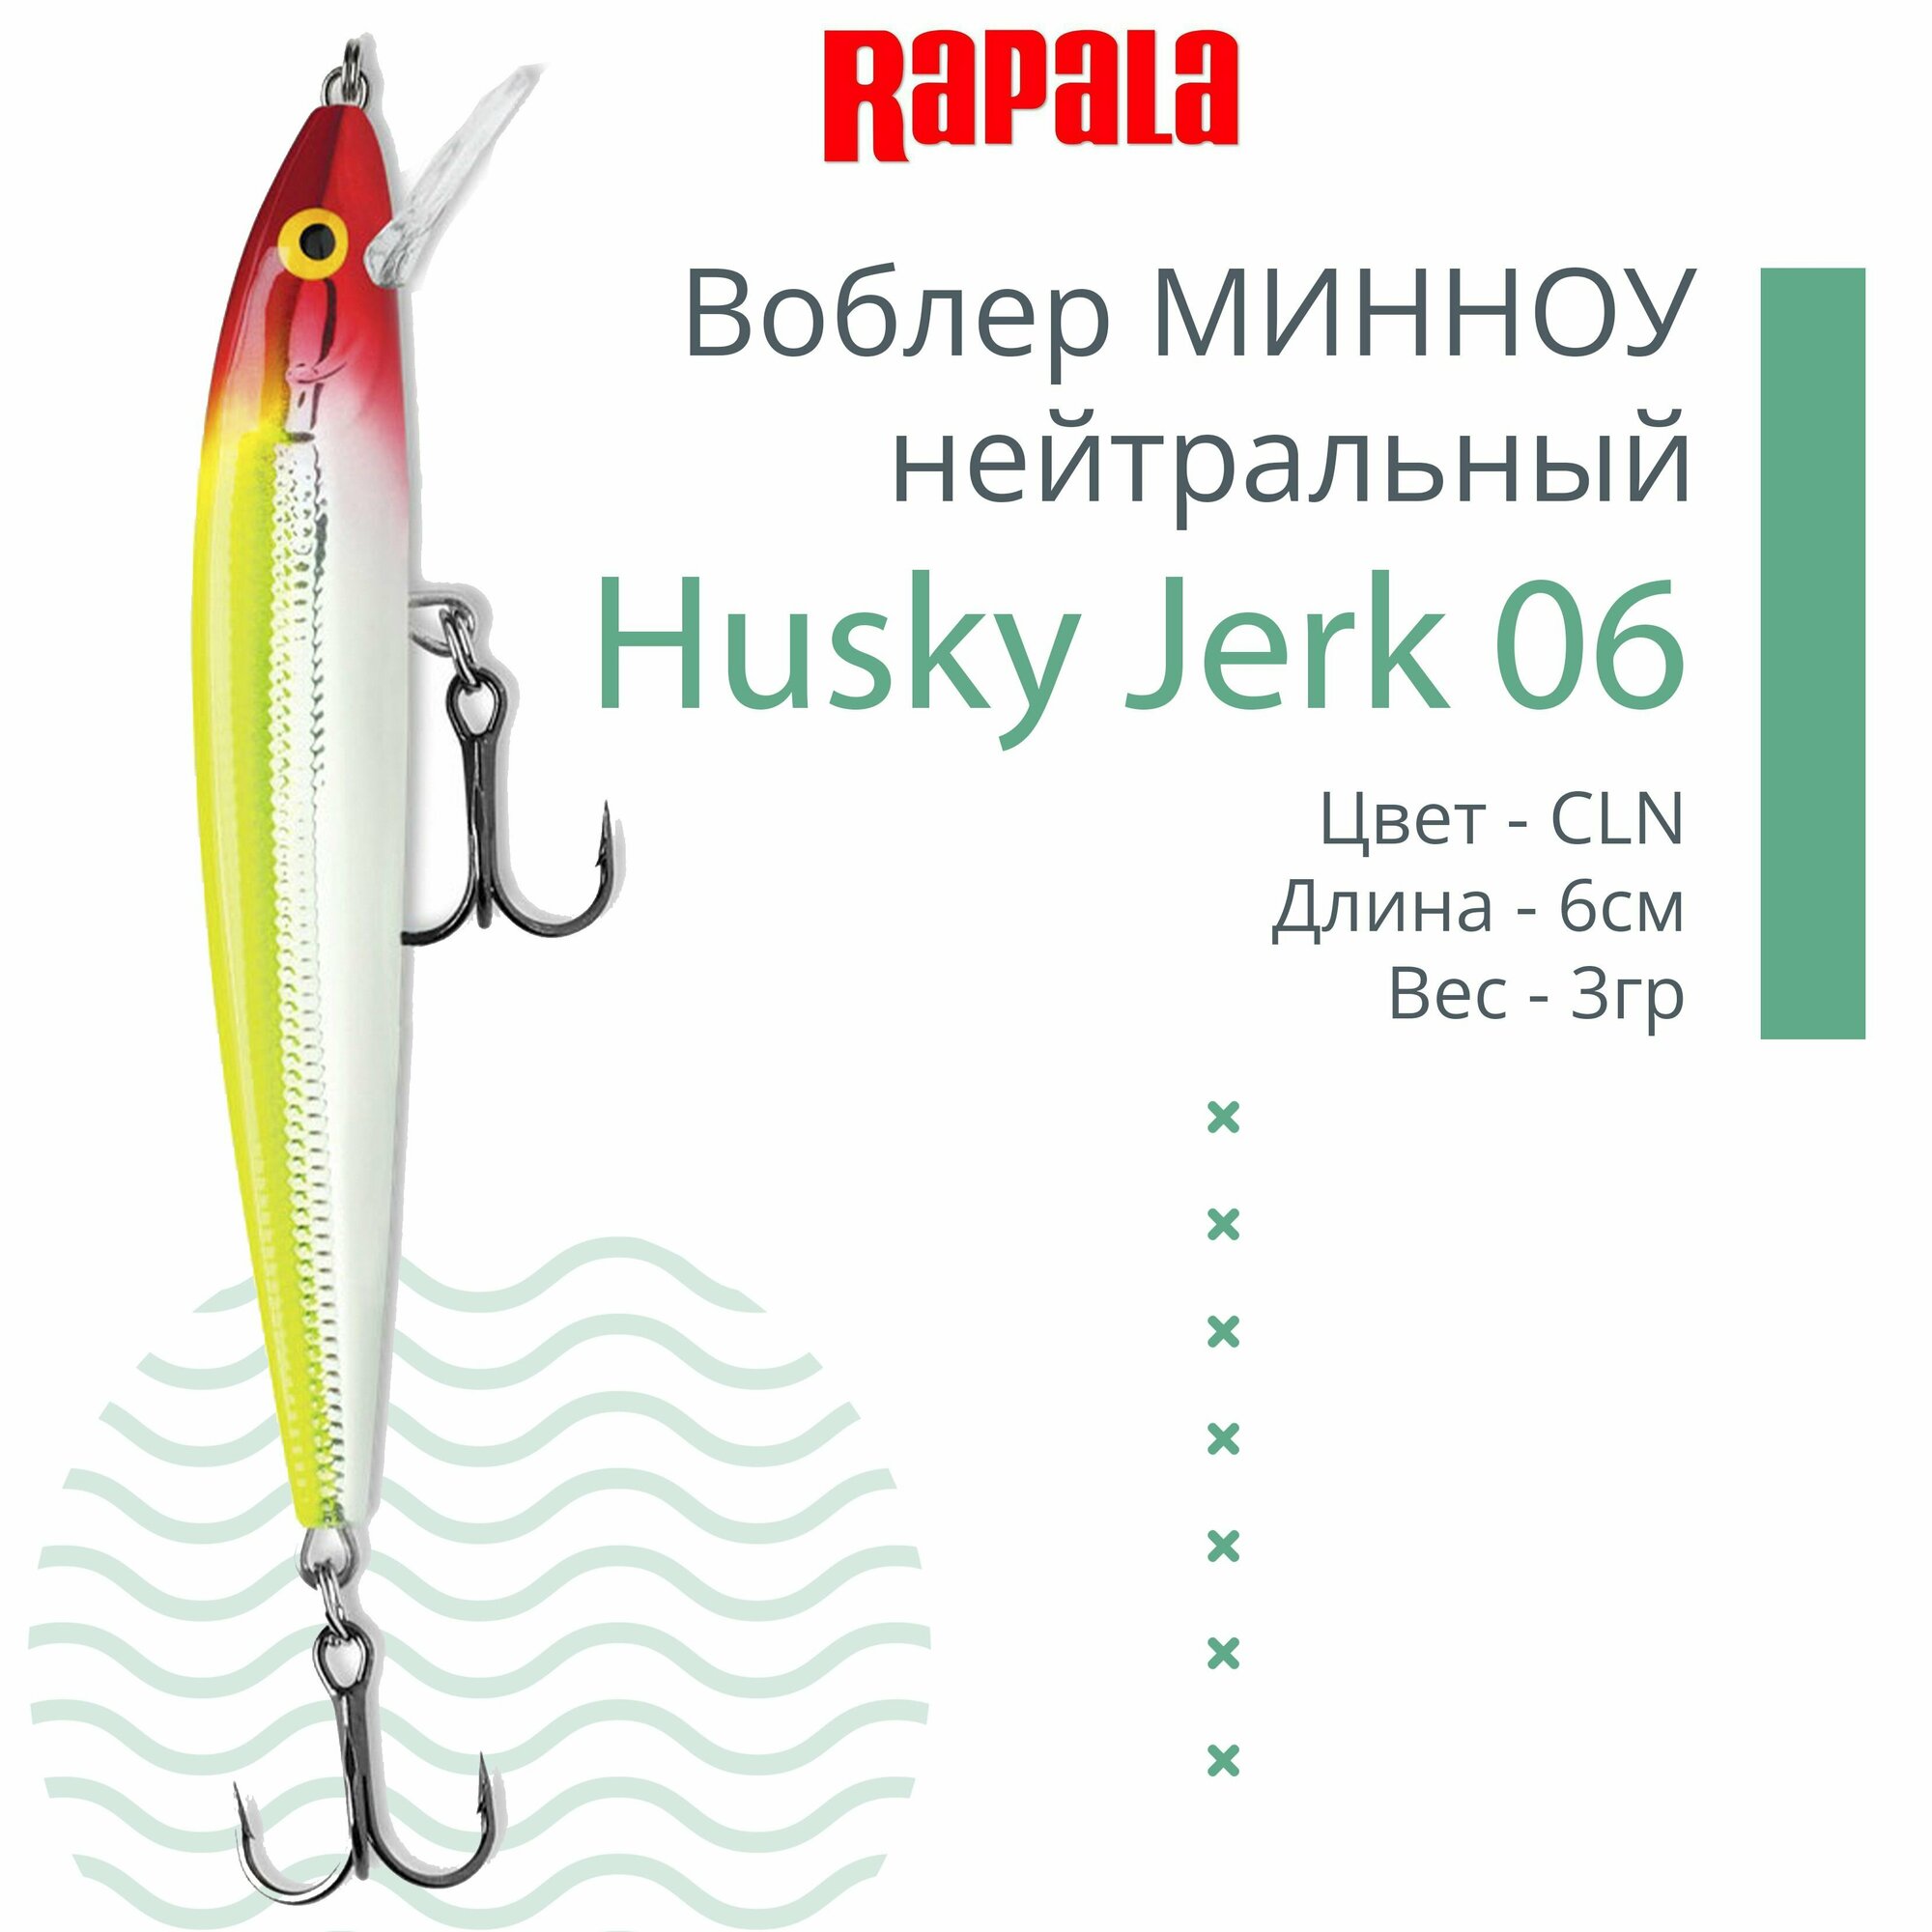 Воблер для рыбалки RAPALA Husky Jerk 06, 6см, 3гр, цвет CLN, нейтральный